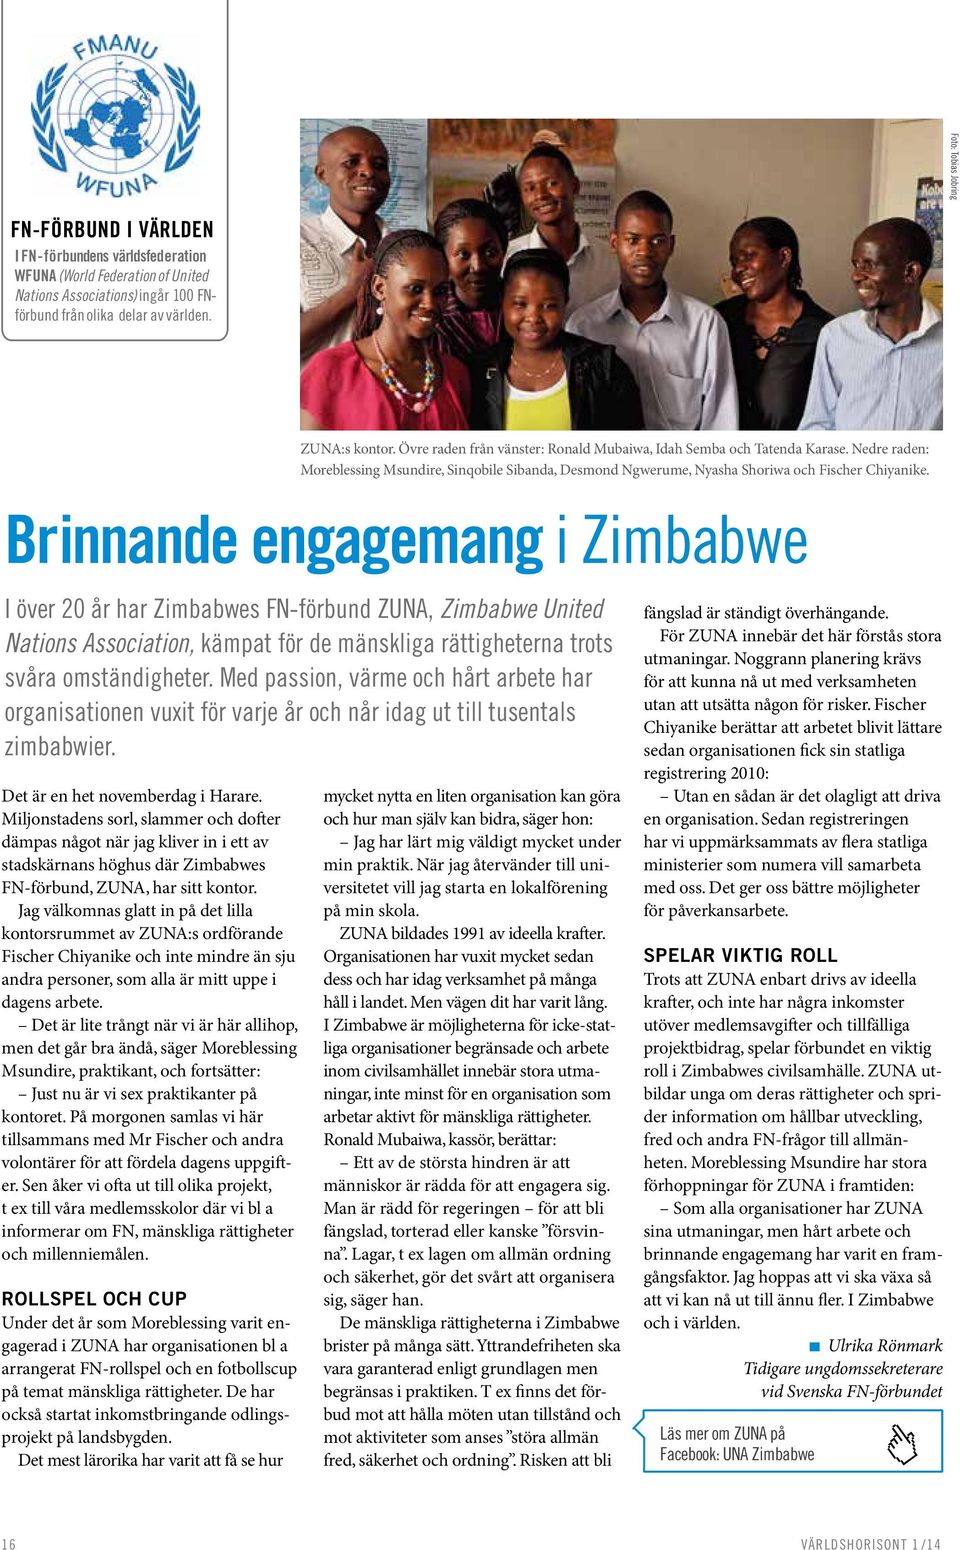 Med passion, värme och hårt arbete har organisationen vuxit för varje år och når idag ut till tusentals zimbabwier. Det är en het novemberdag i Harare.